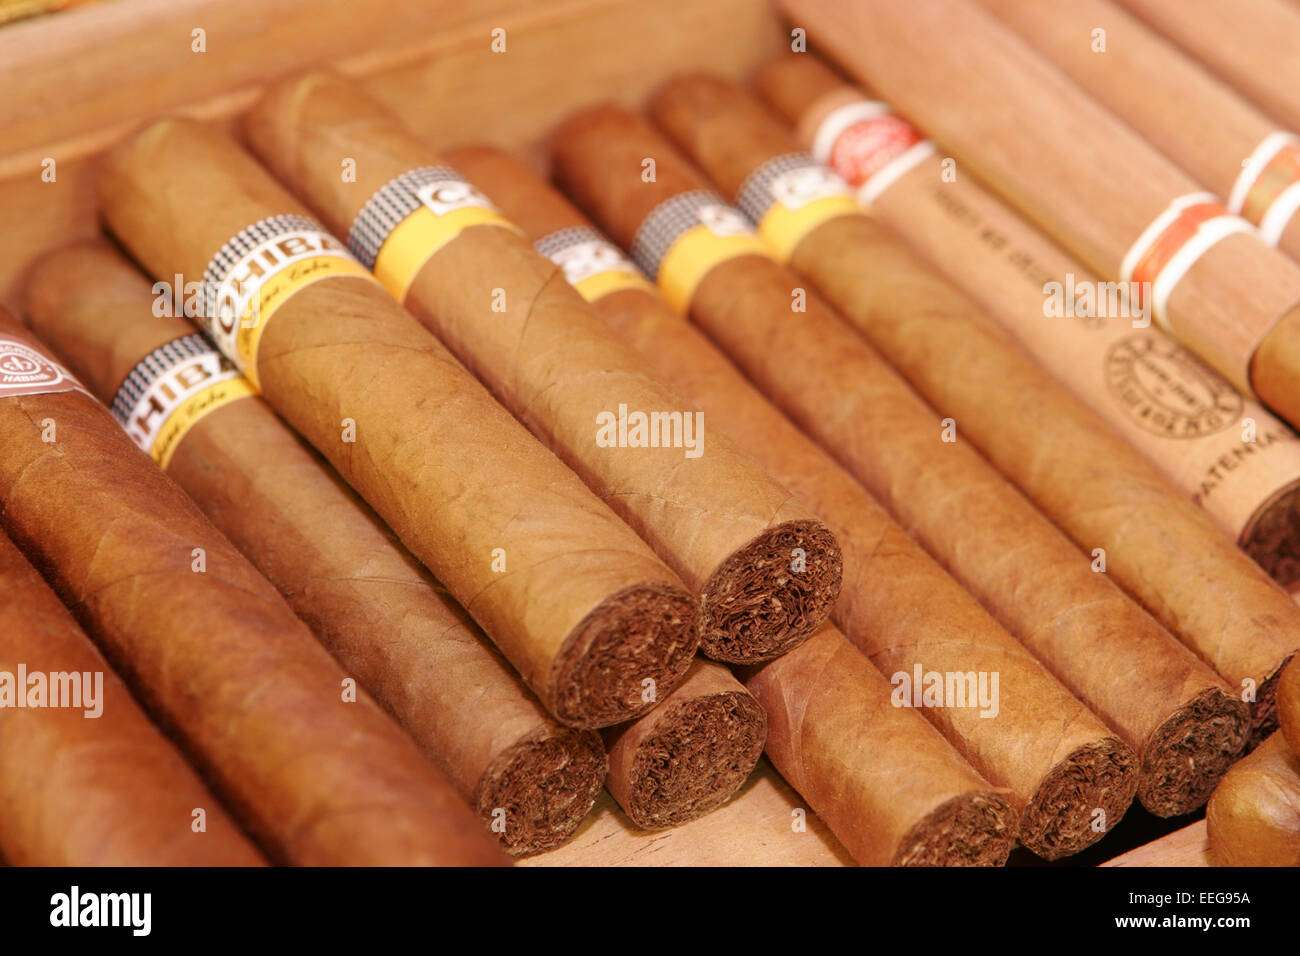 Zigarren, Rauchen, Genussmittel, Genuss, Sucht, Luxus, Tabak, Cohiba, Kubanische, Kiste, Zigarrenkiste, Zigarre, Droge, Drogen, Foto Stock